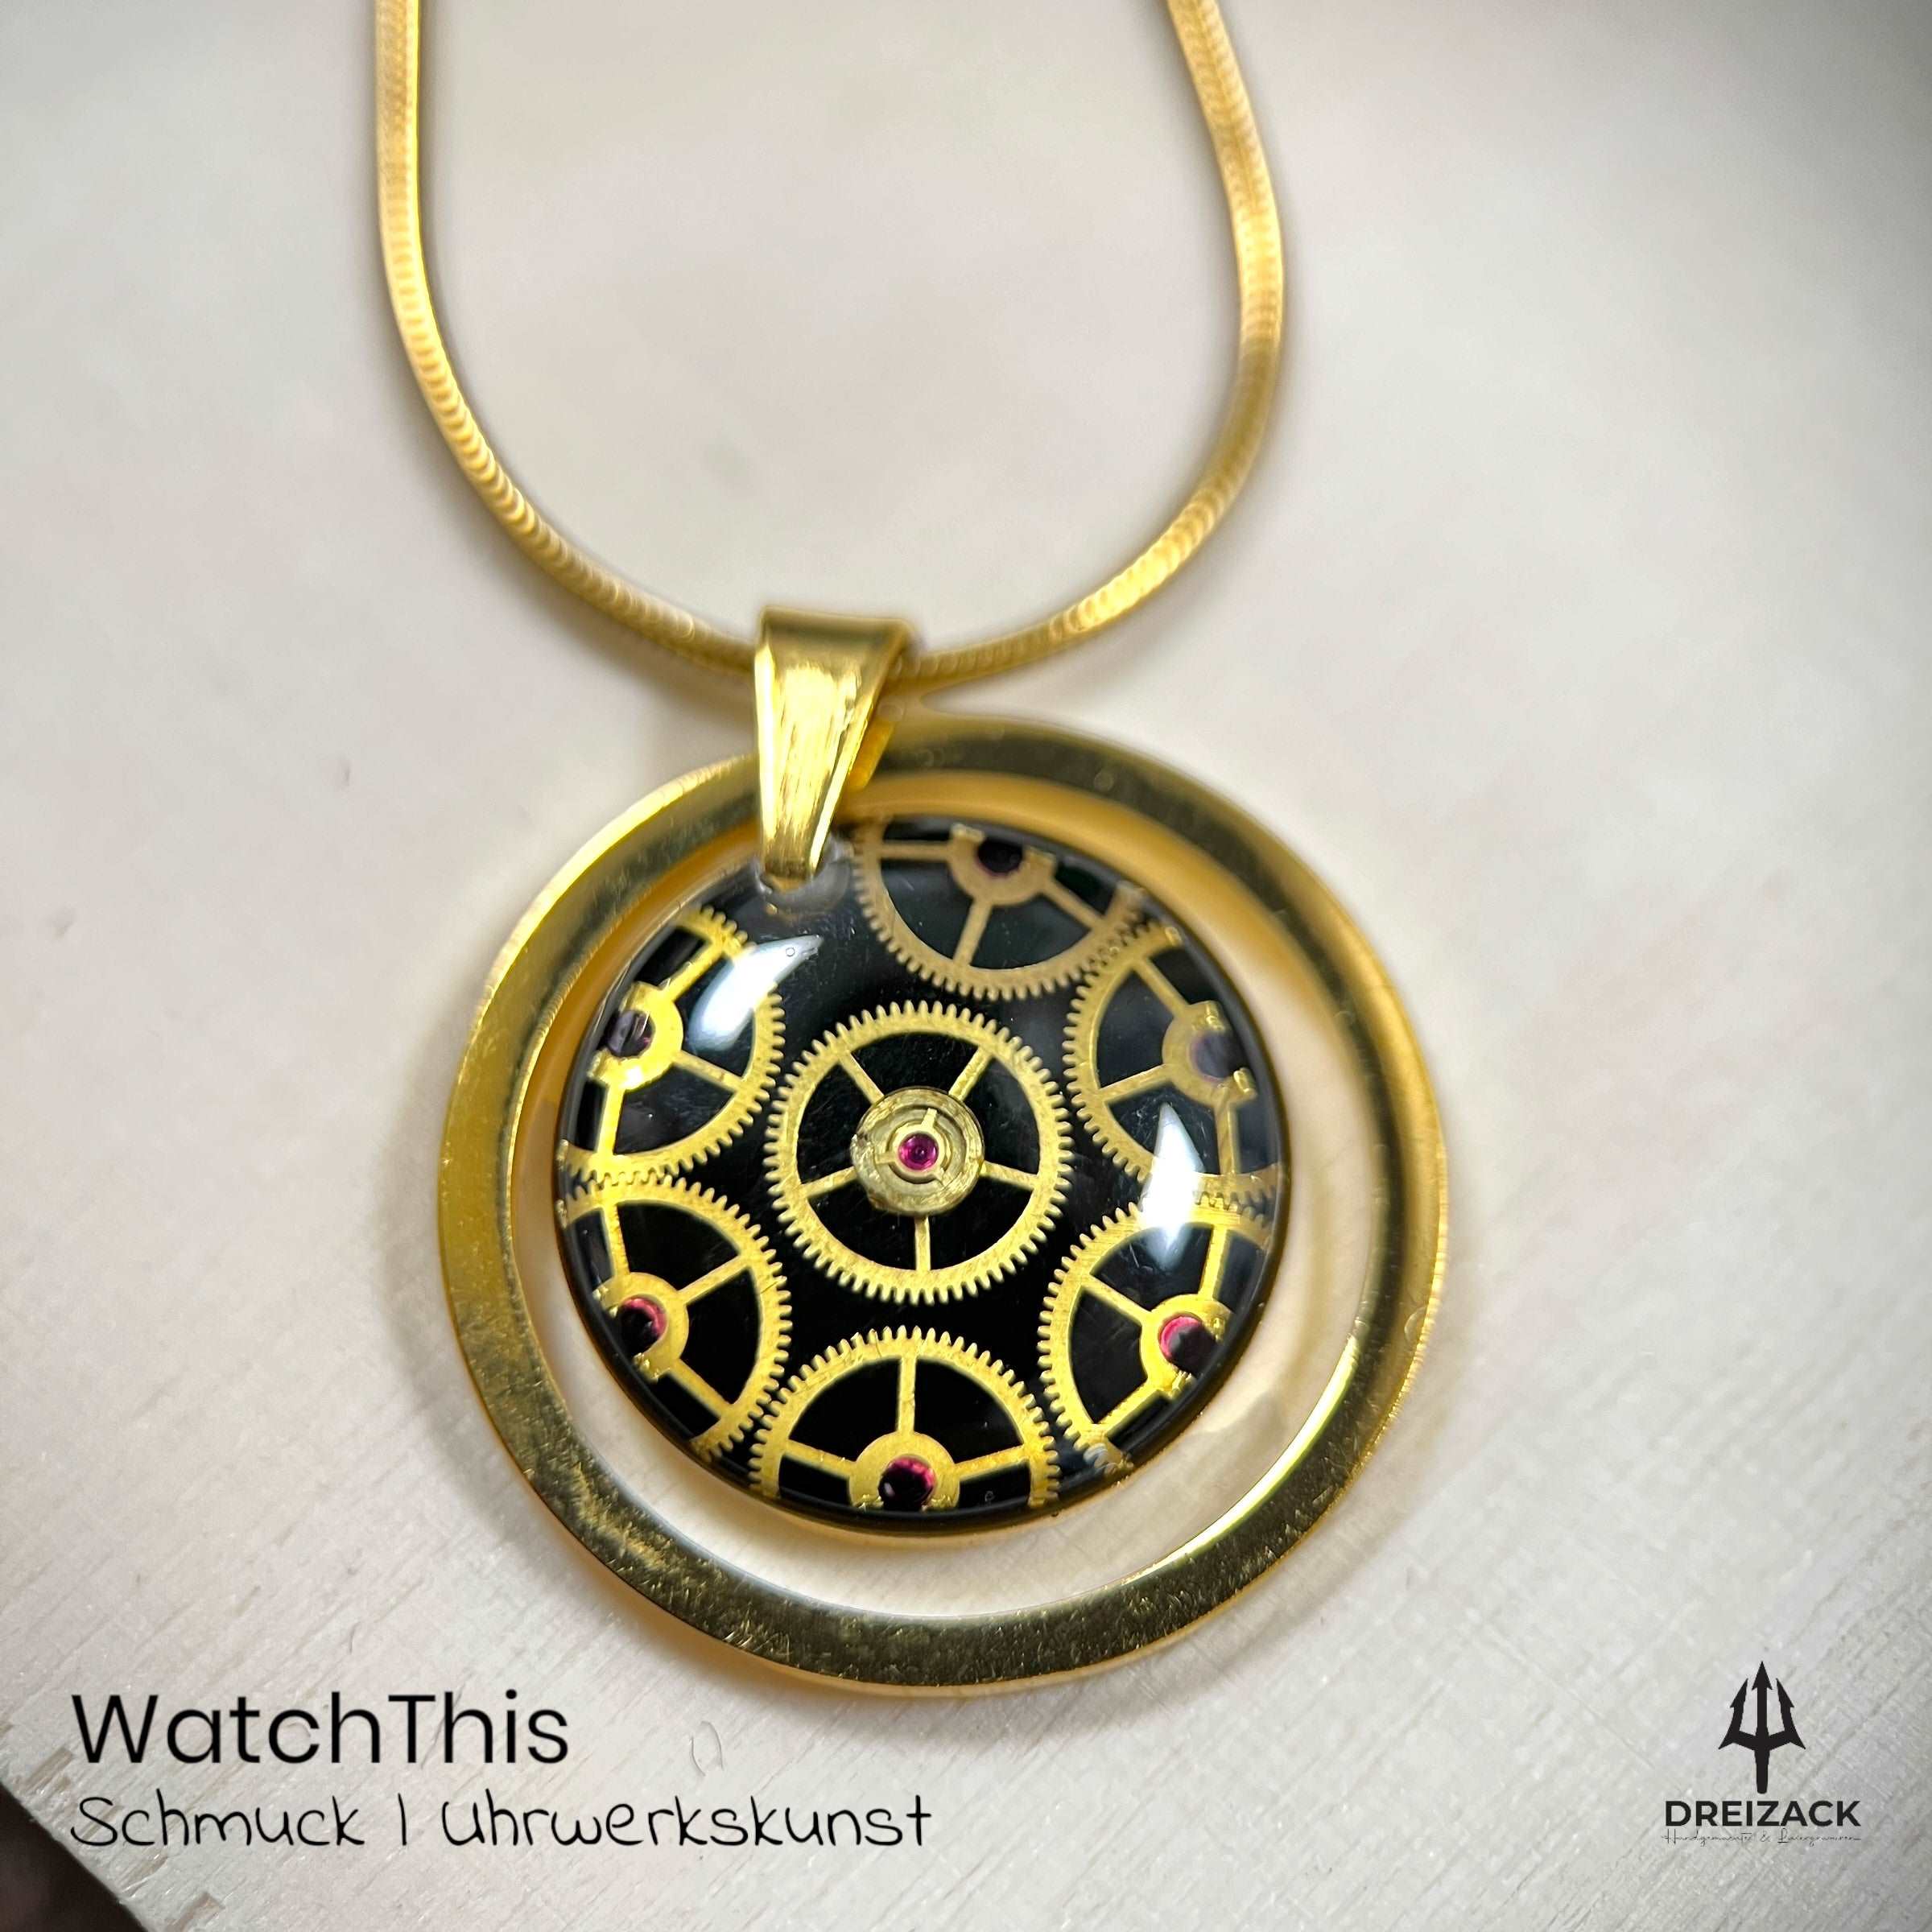 Halsketten von WatchThis - Zeitlose Eleganz aus Uhrwerken Gold mit Rahmen | David Schmuck WatchThis oesterreich handgemachte geschenke in wien